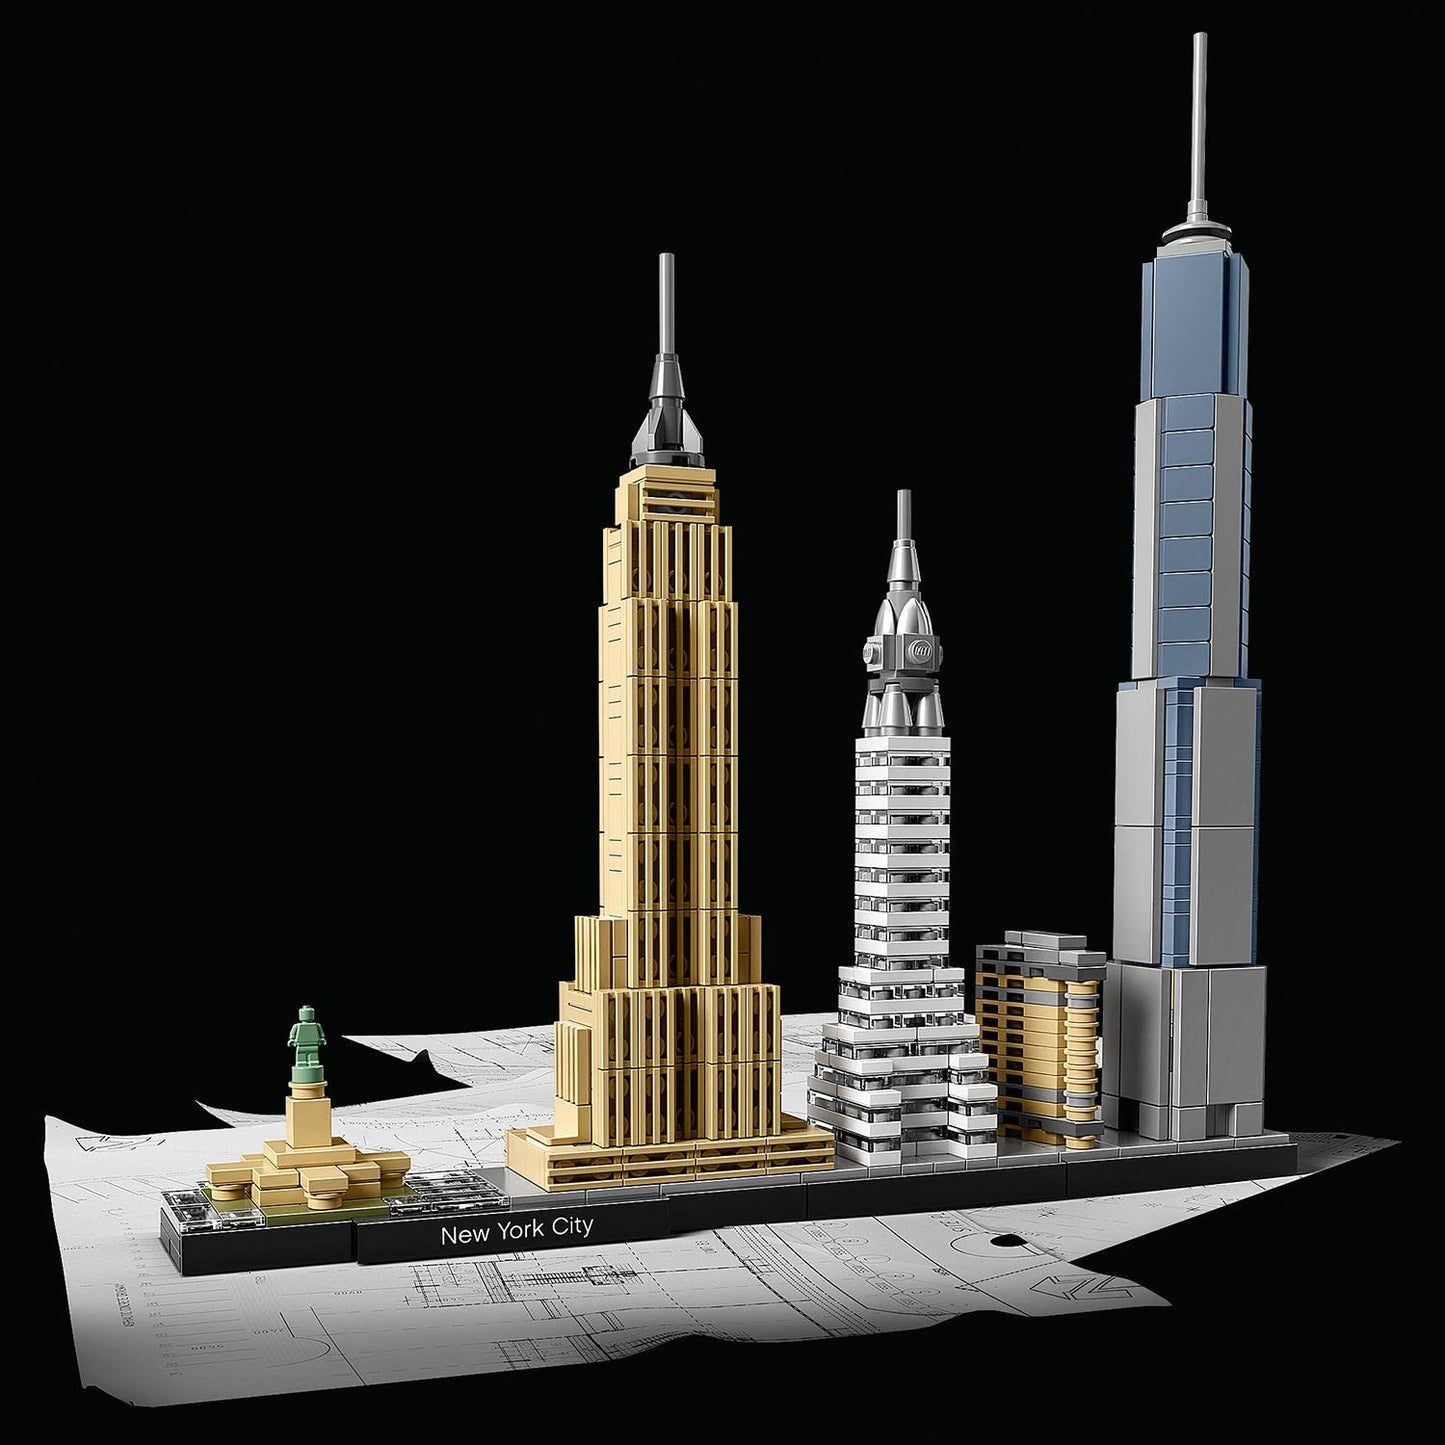 LEGO Architecture Ciudad de Nueva York Set de Construcción de Ciudad, Maqueta de Monumentos, Decoración de Oficina y Accesorio de Escritorio, Regalo Coleccionable para Hombres y Mujeres 21028